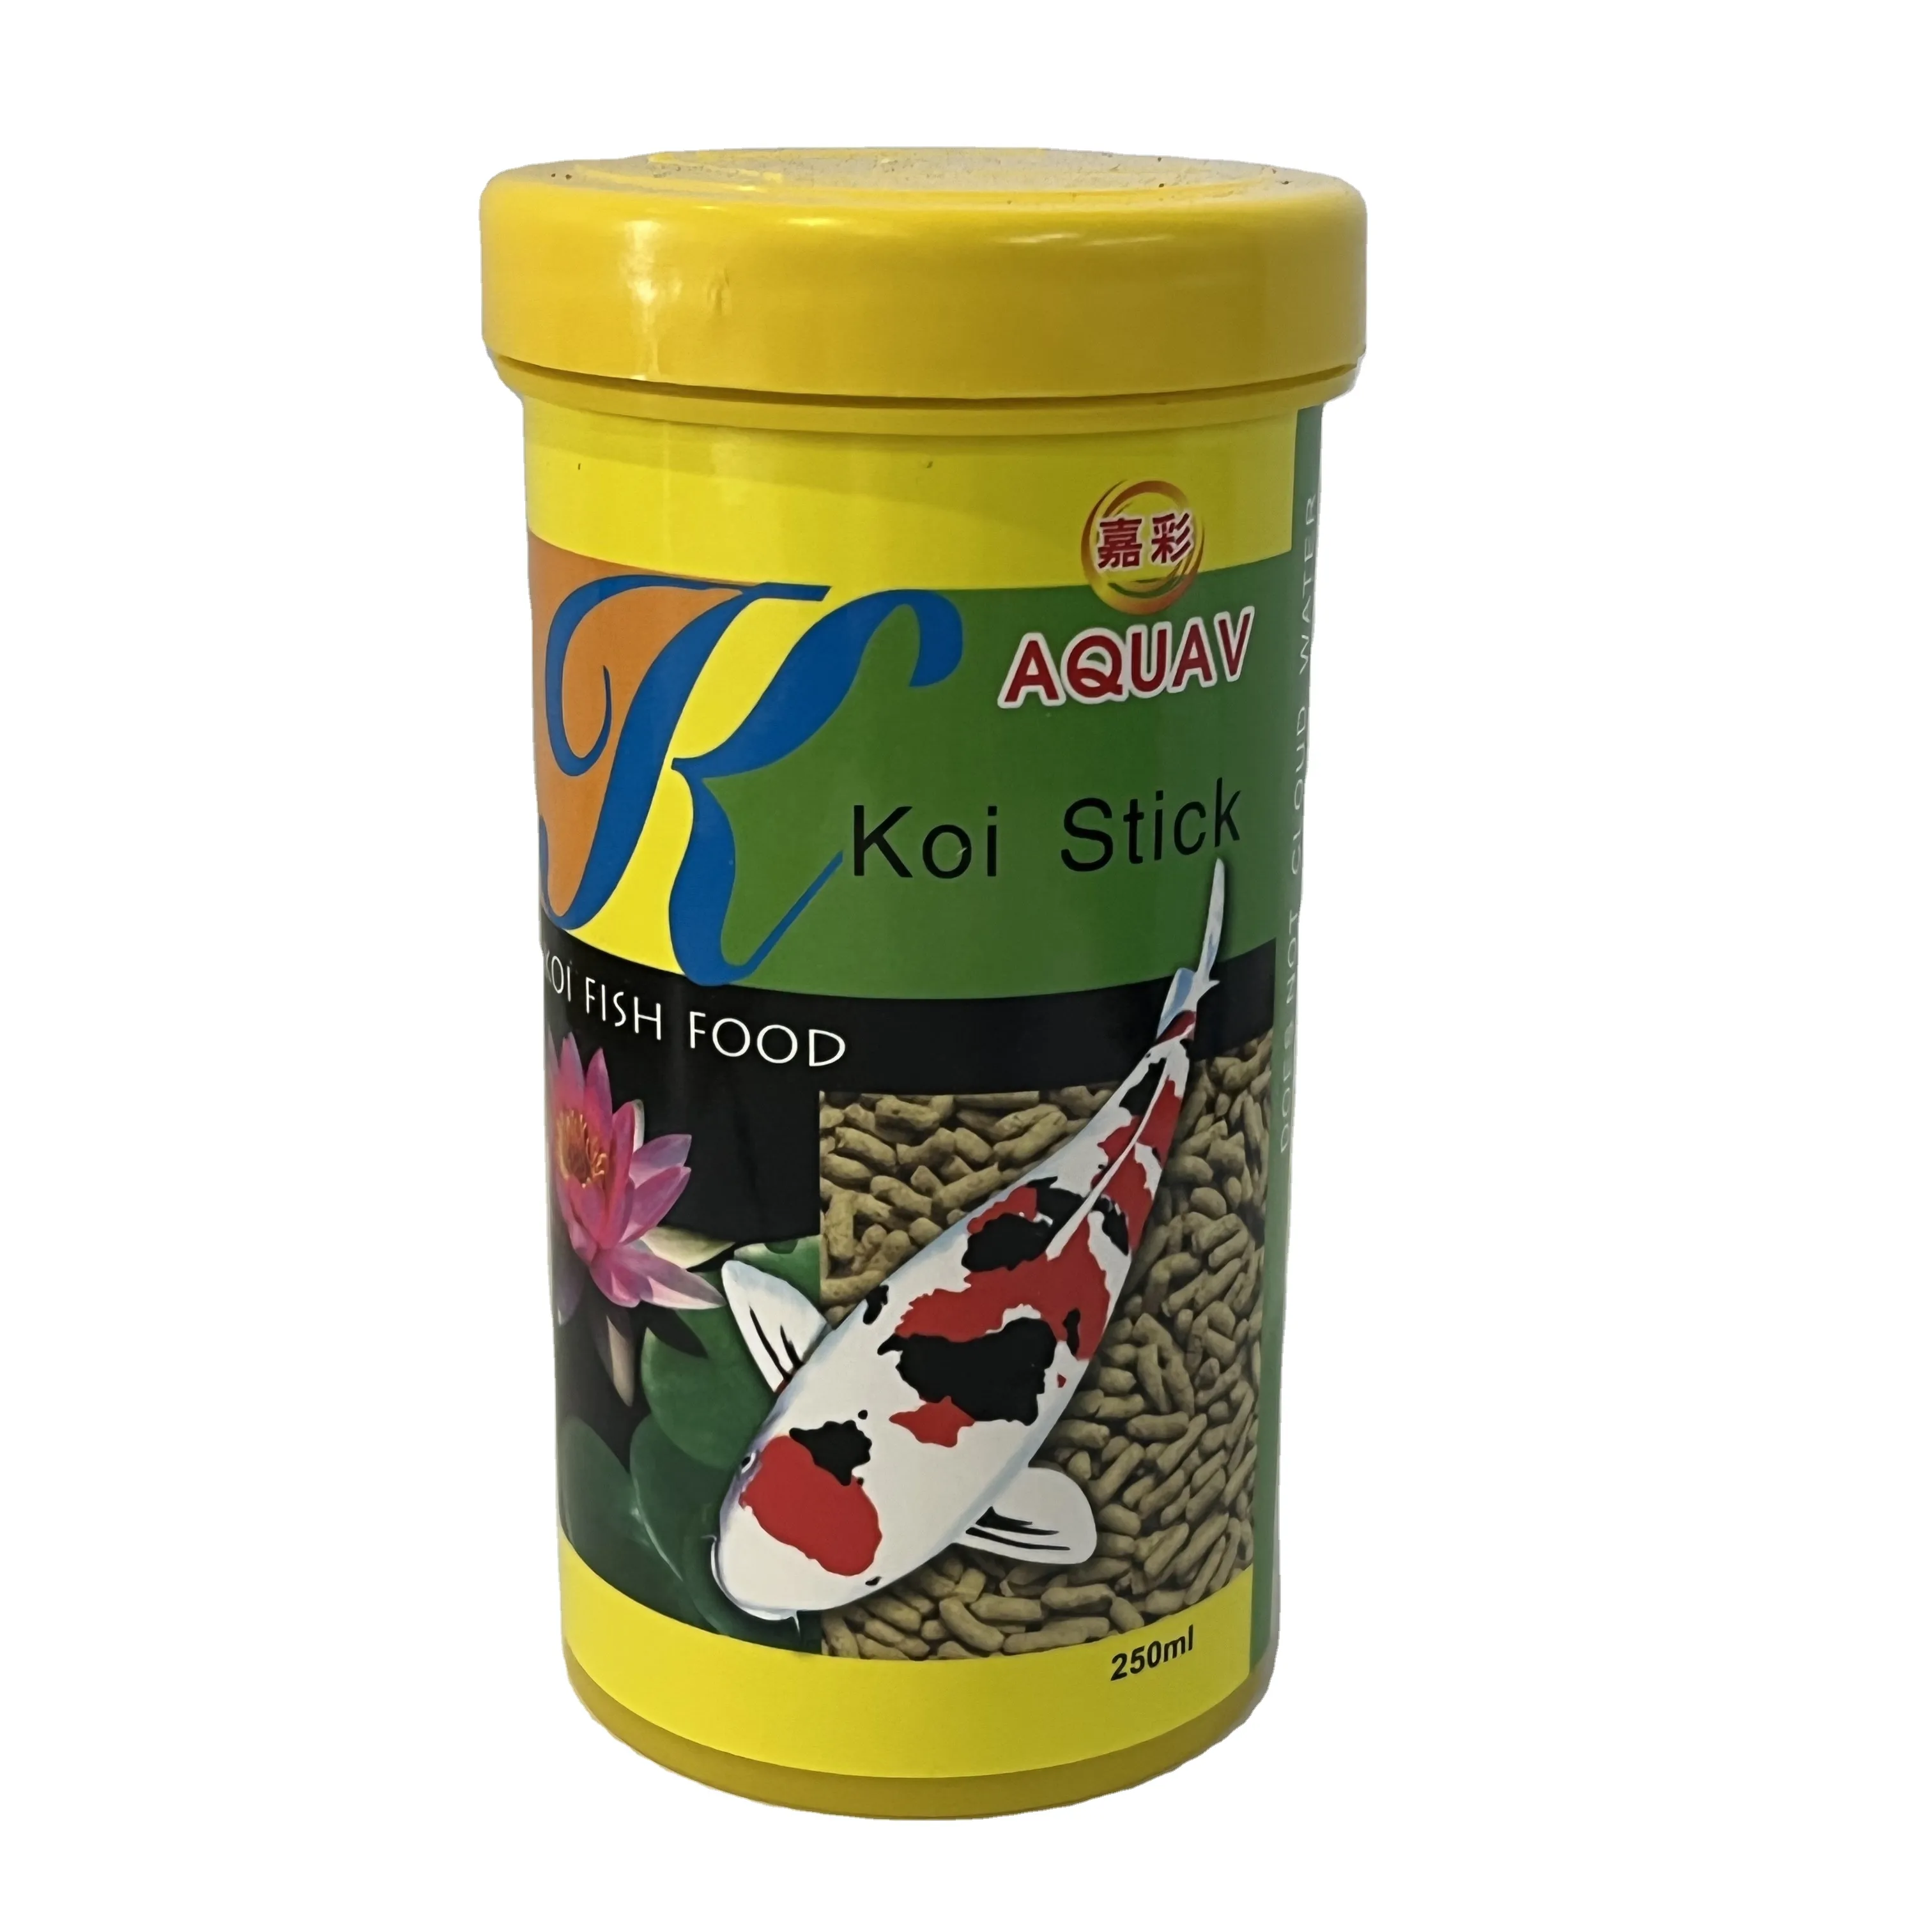 Palitos de koi embotellados de alta nutrición y alta proteína para pescado en una variedad de especificaciones